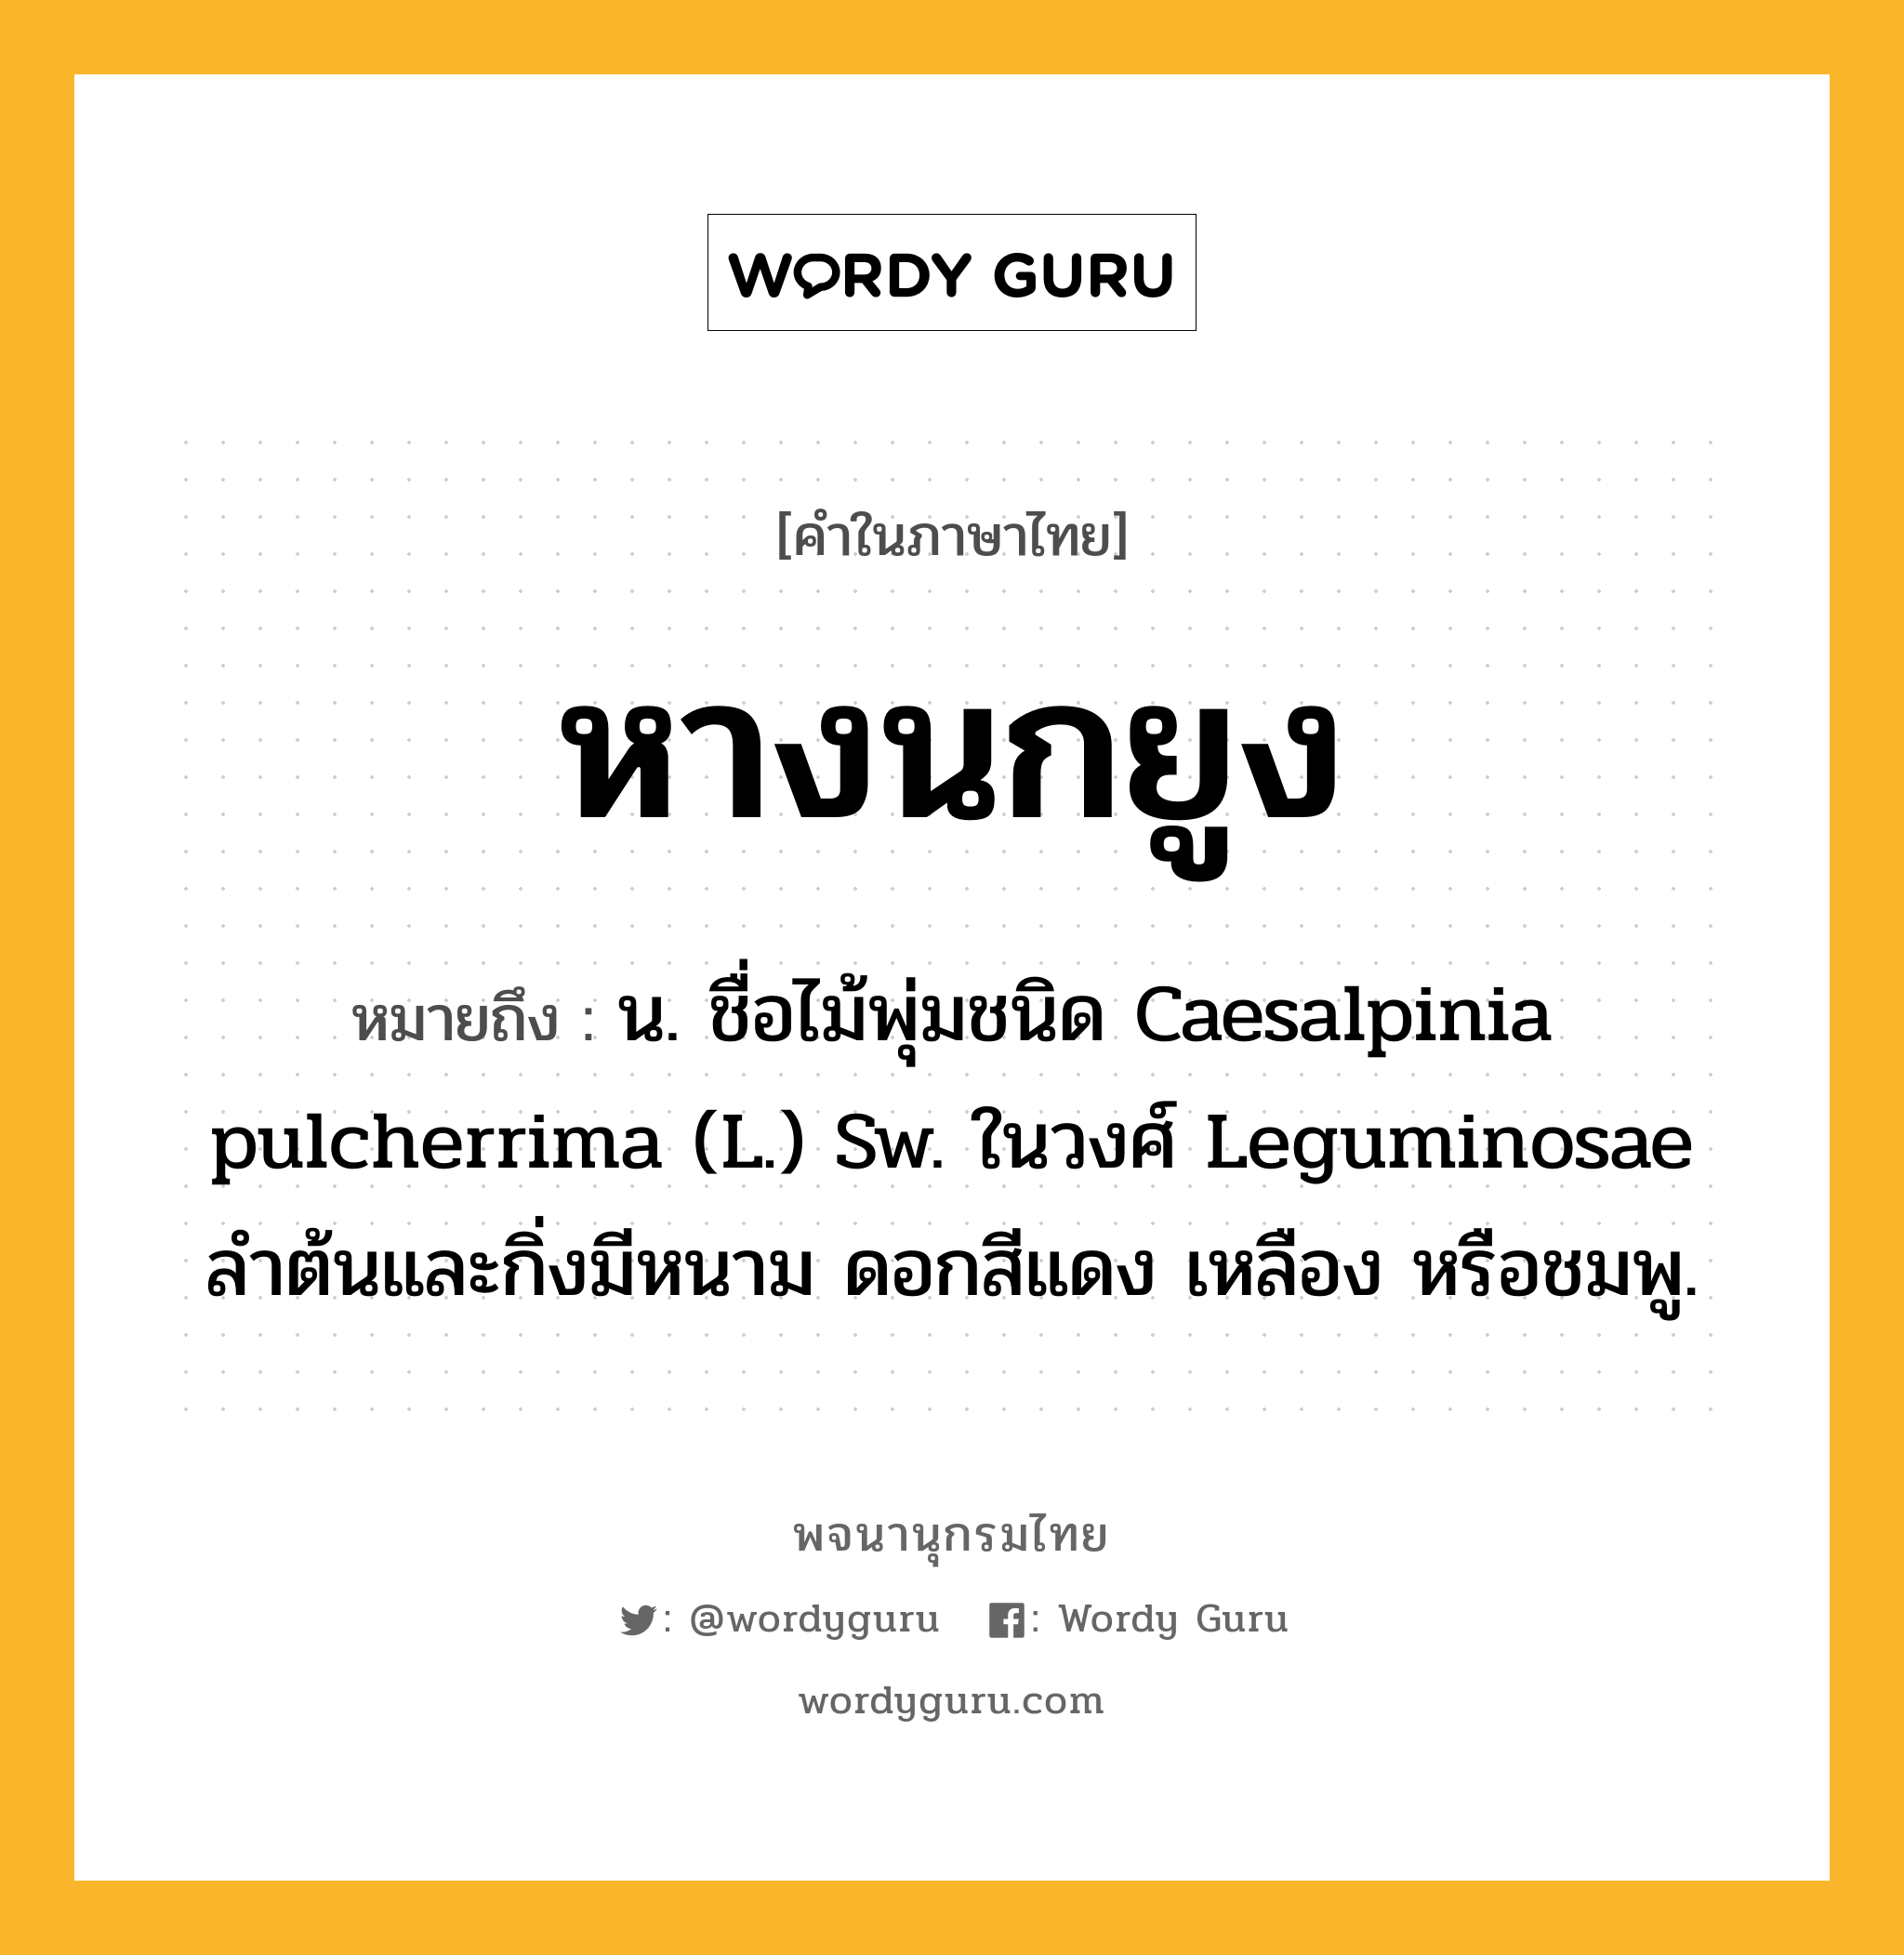 หางนกยูง หมายถึงอะไร?, คำในภาษาไทย หางนกยูง หมายถึง น. ชื่อไม้พุ่มชนิด Caesalpinia pulcherrima (L.) Sw. ในวงศ์ Leguminosae ลําต้นและกิ่งมีหนาม ดอกสีแดง เหลือง หรือชมพู.